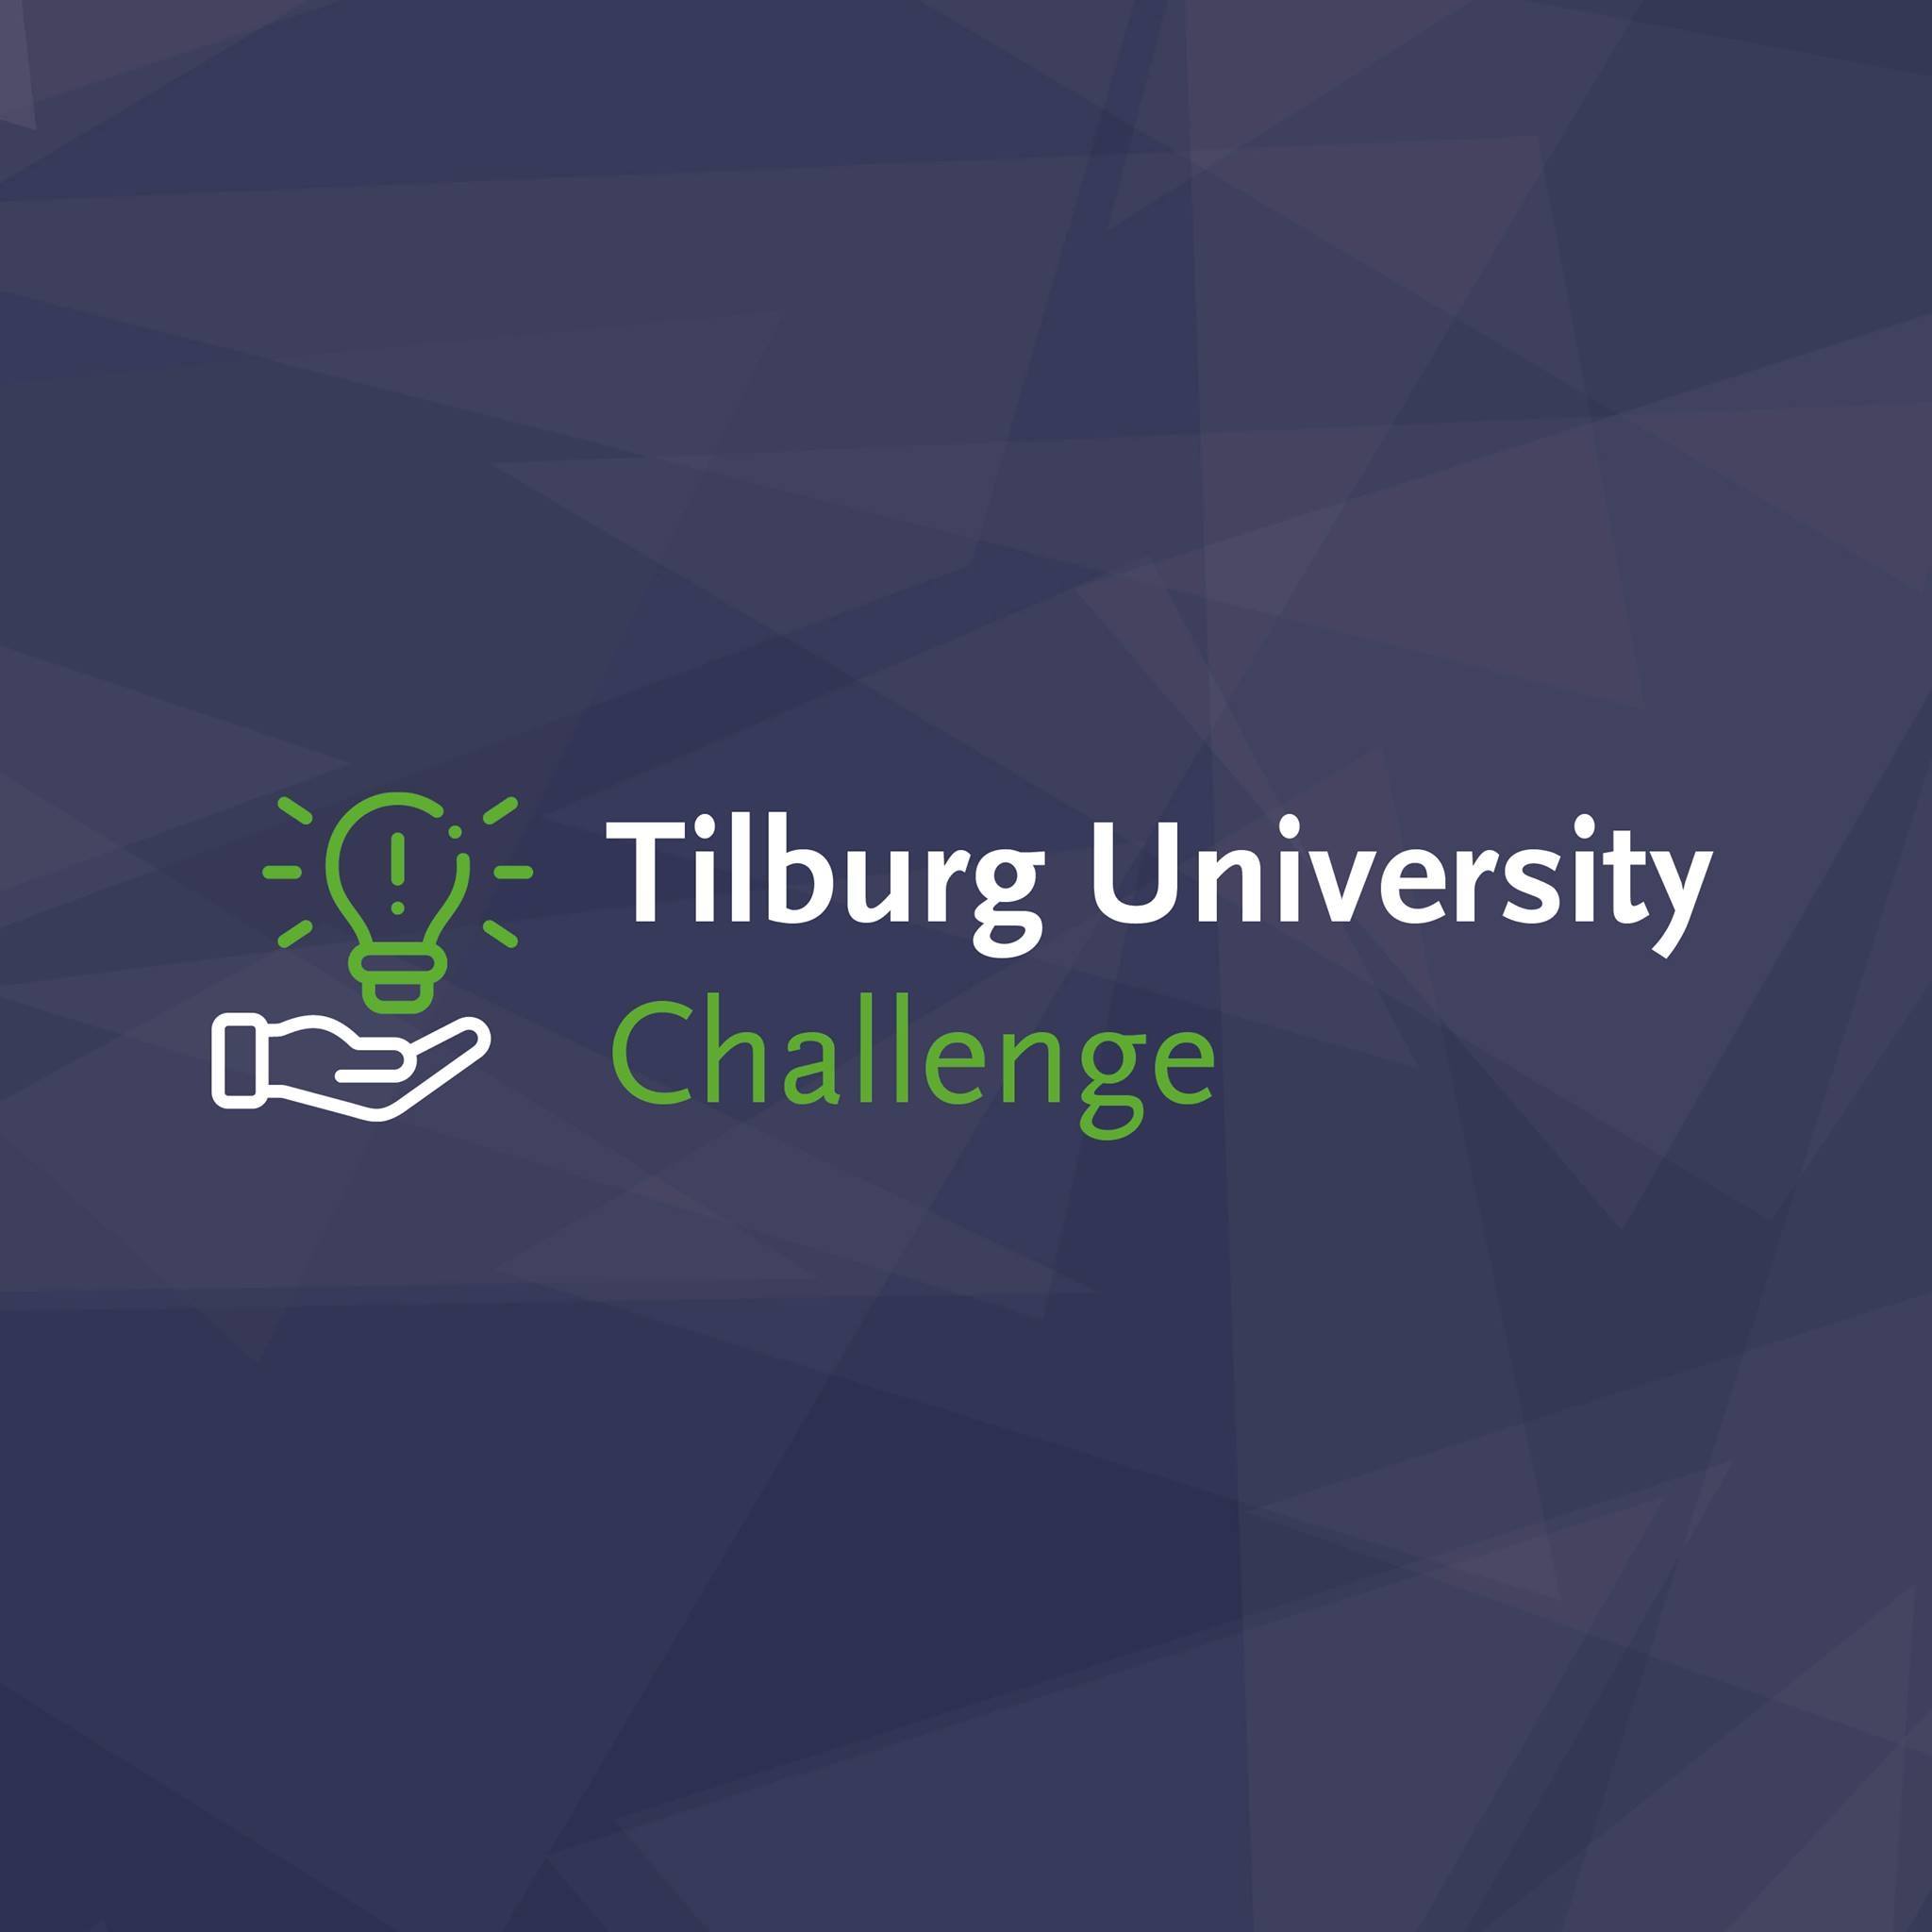 Tilburg University Challenge